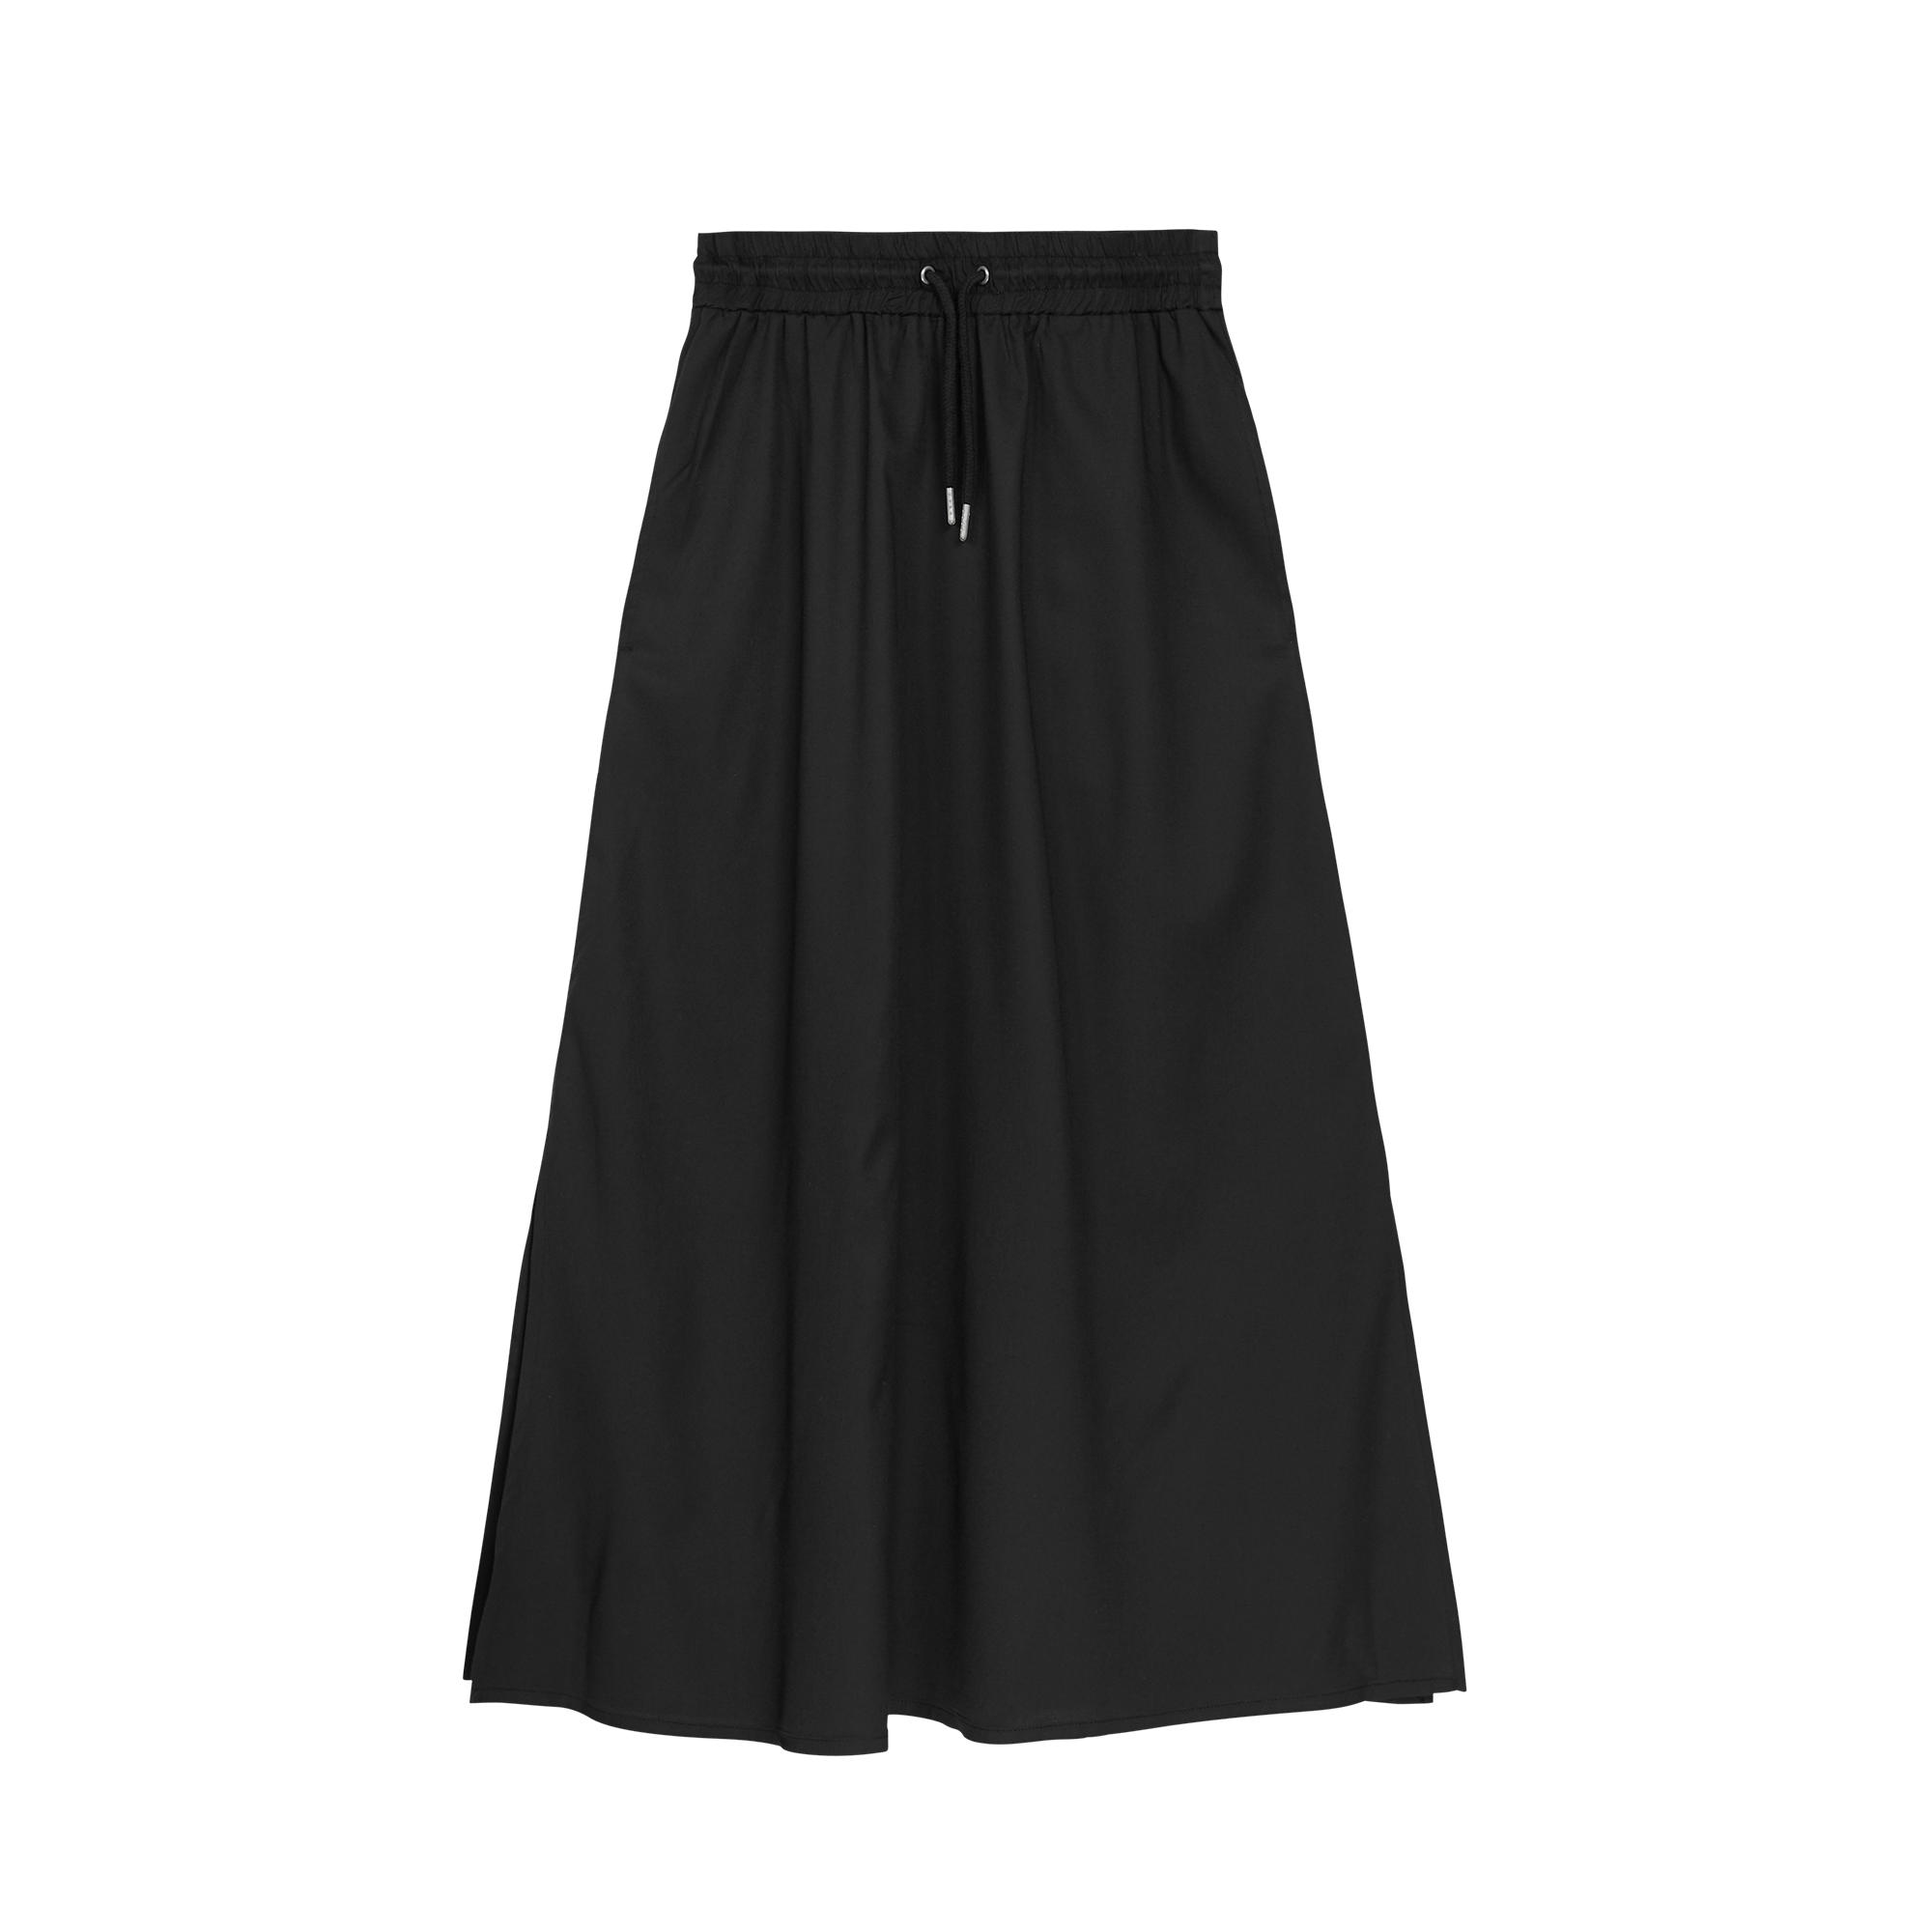 Kira Skirt